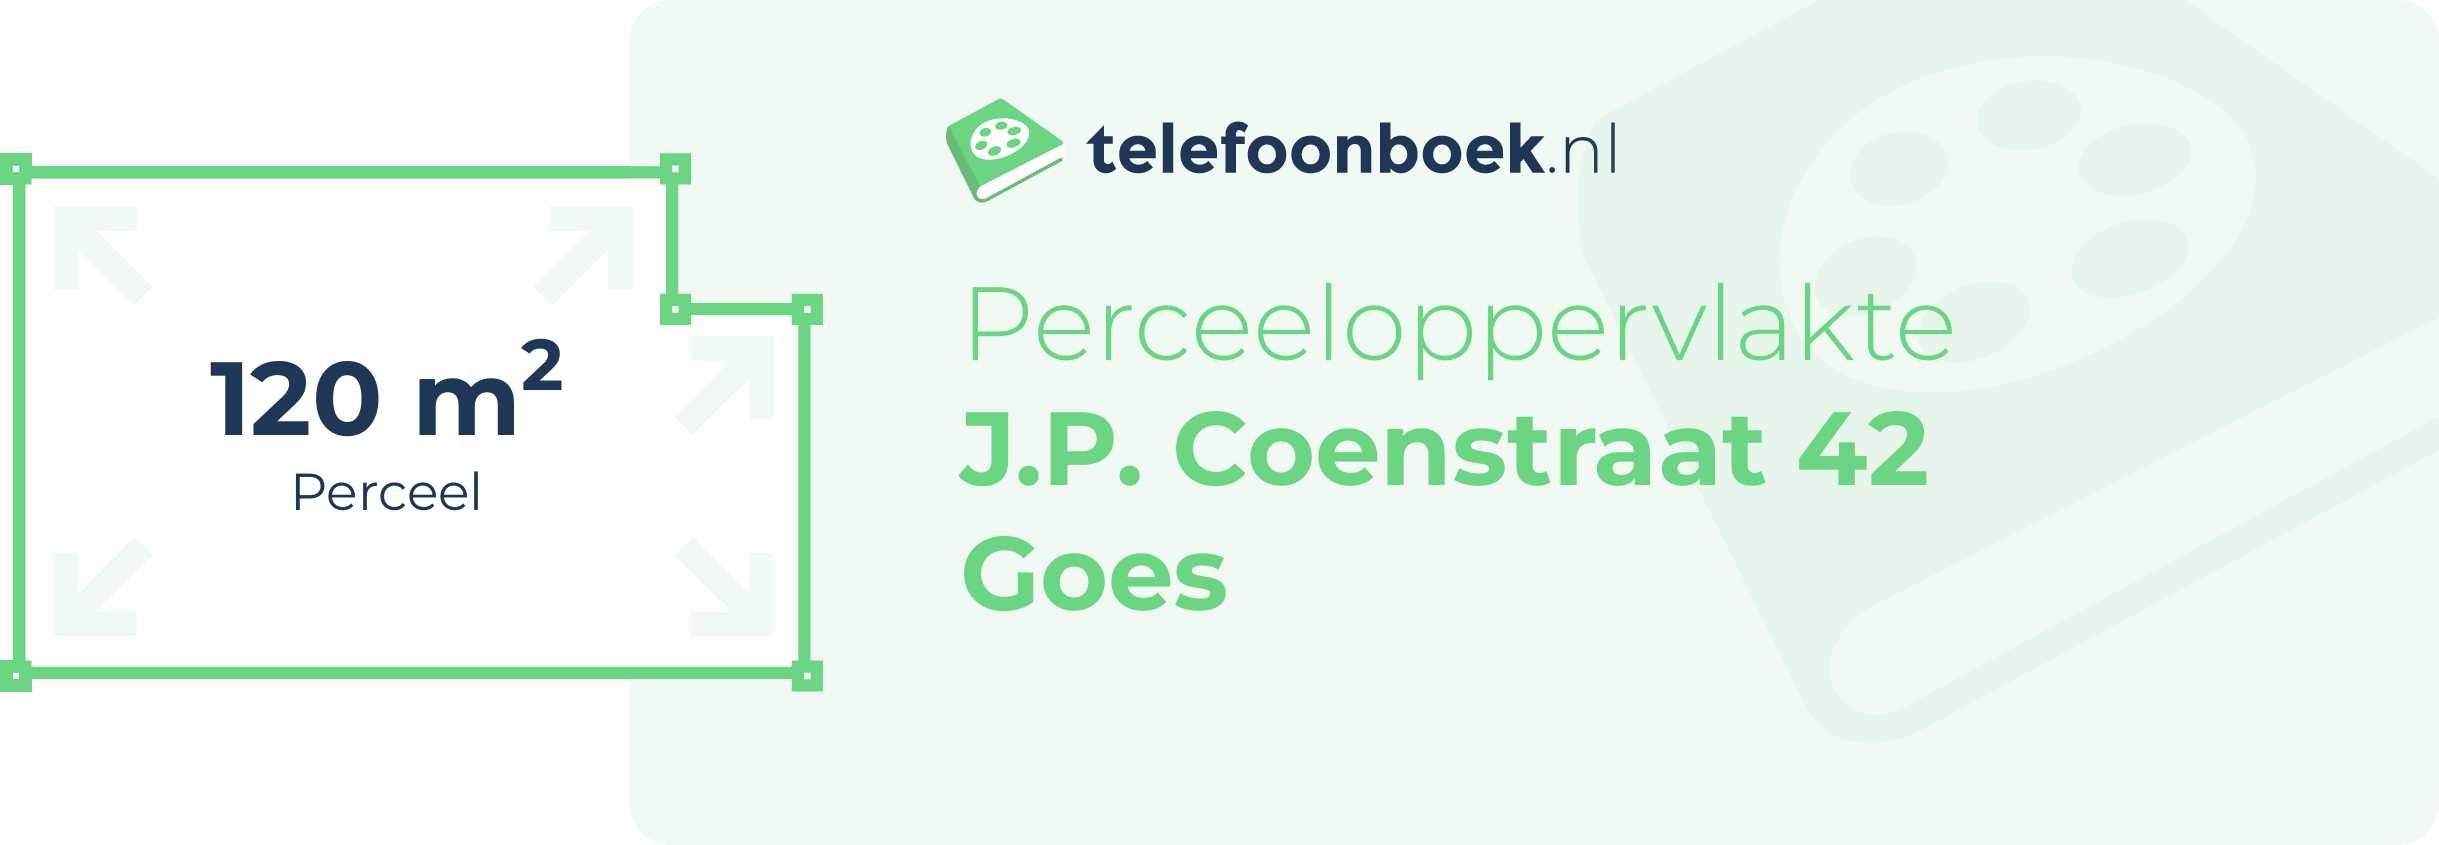 Perceeloppervlakte J.P. Coenstraat 42 Goes